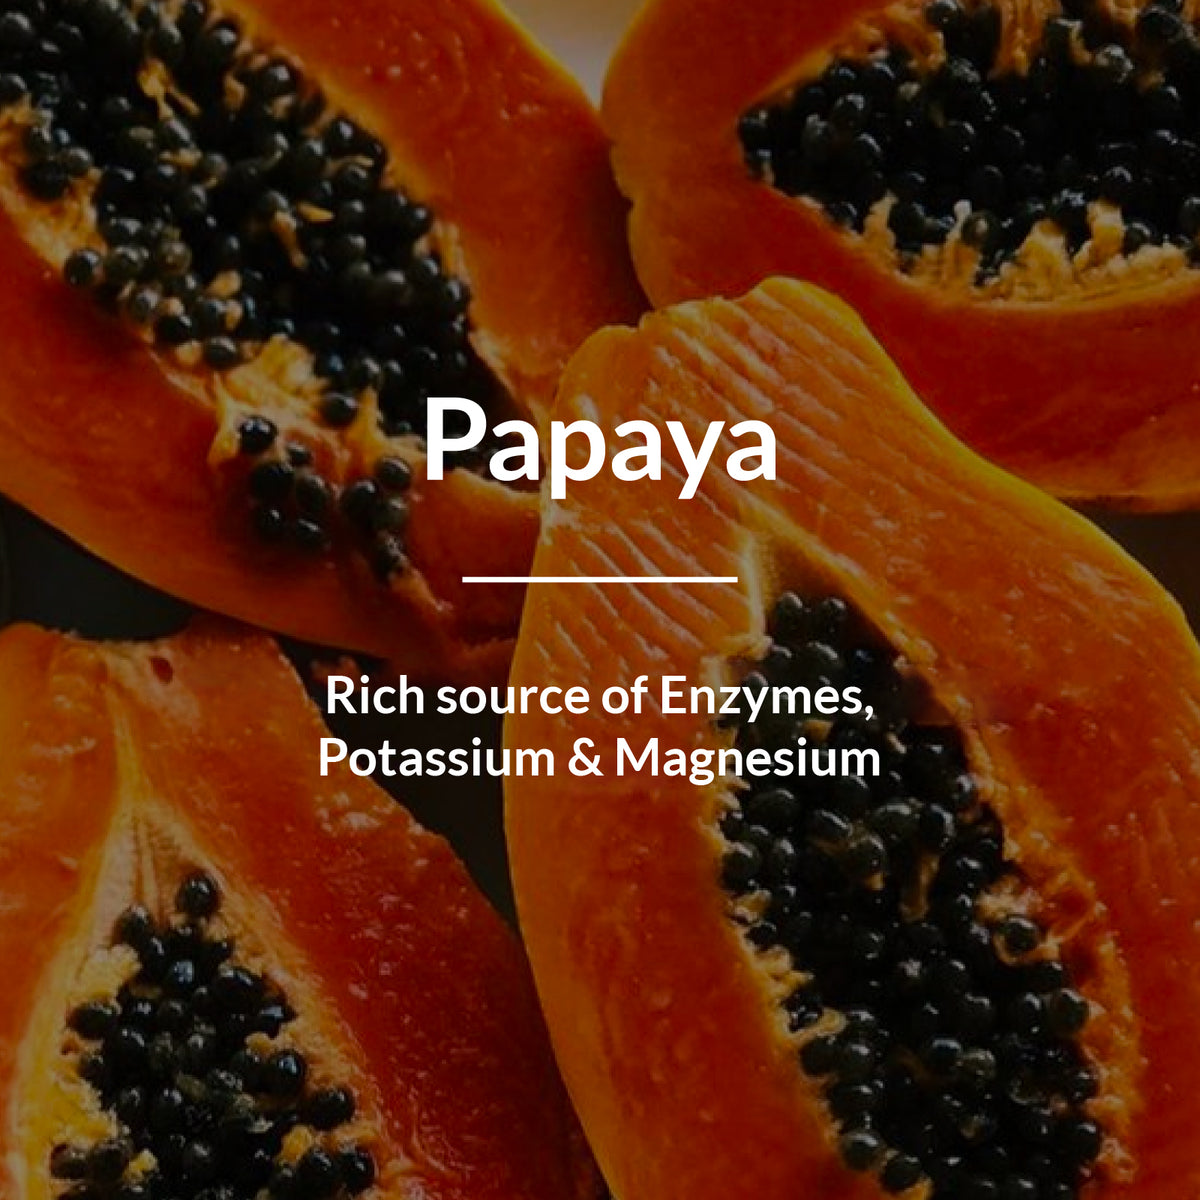 Lotus Botanicals Papaya & Vitamin E Glow-Boosting Trio